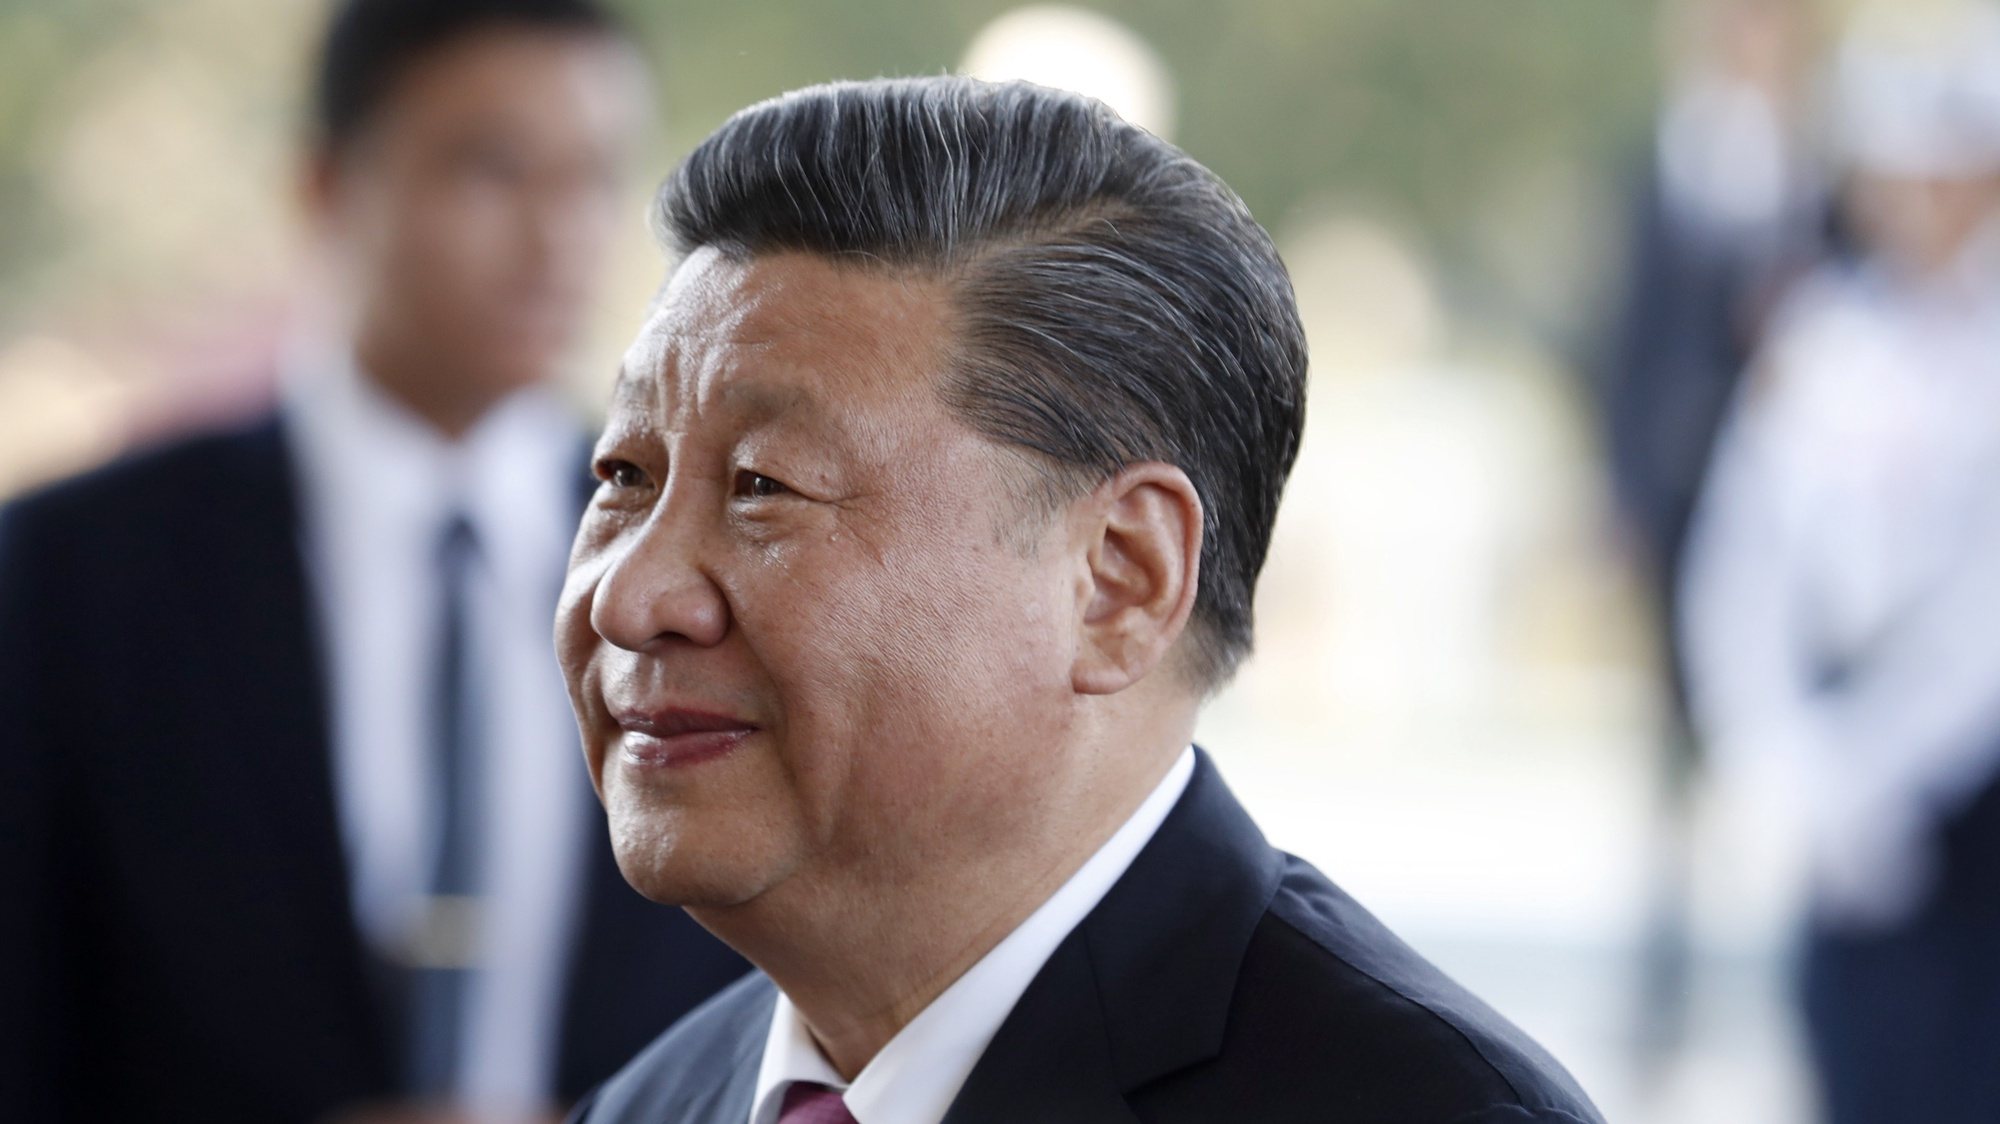 Xi Jinping, o Presidente chinês